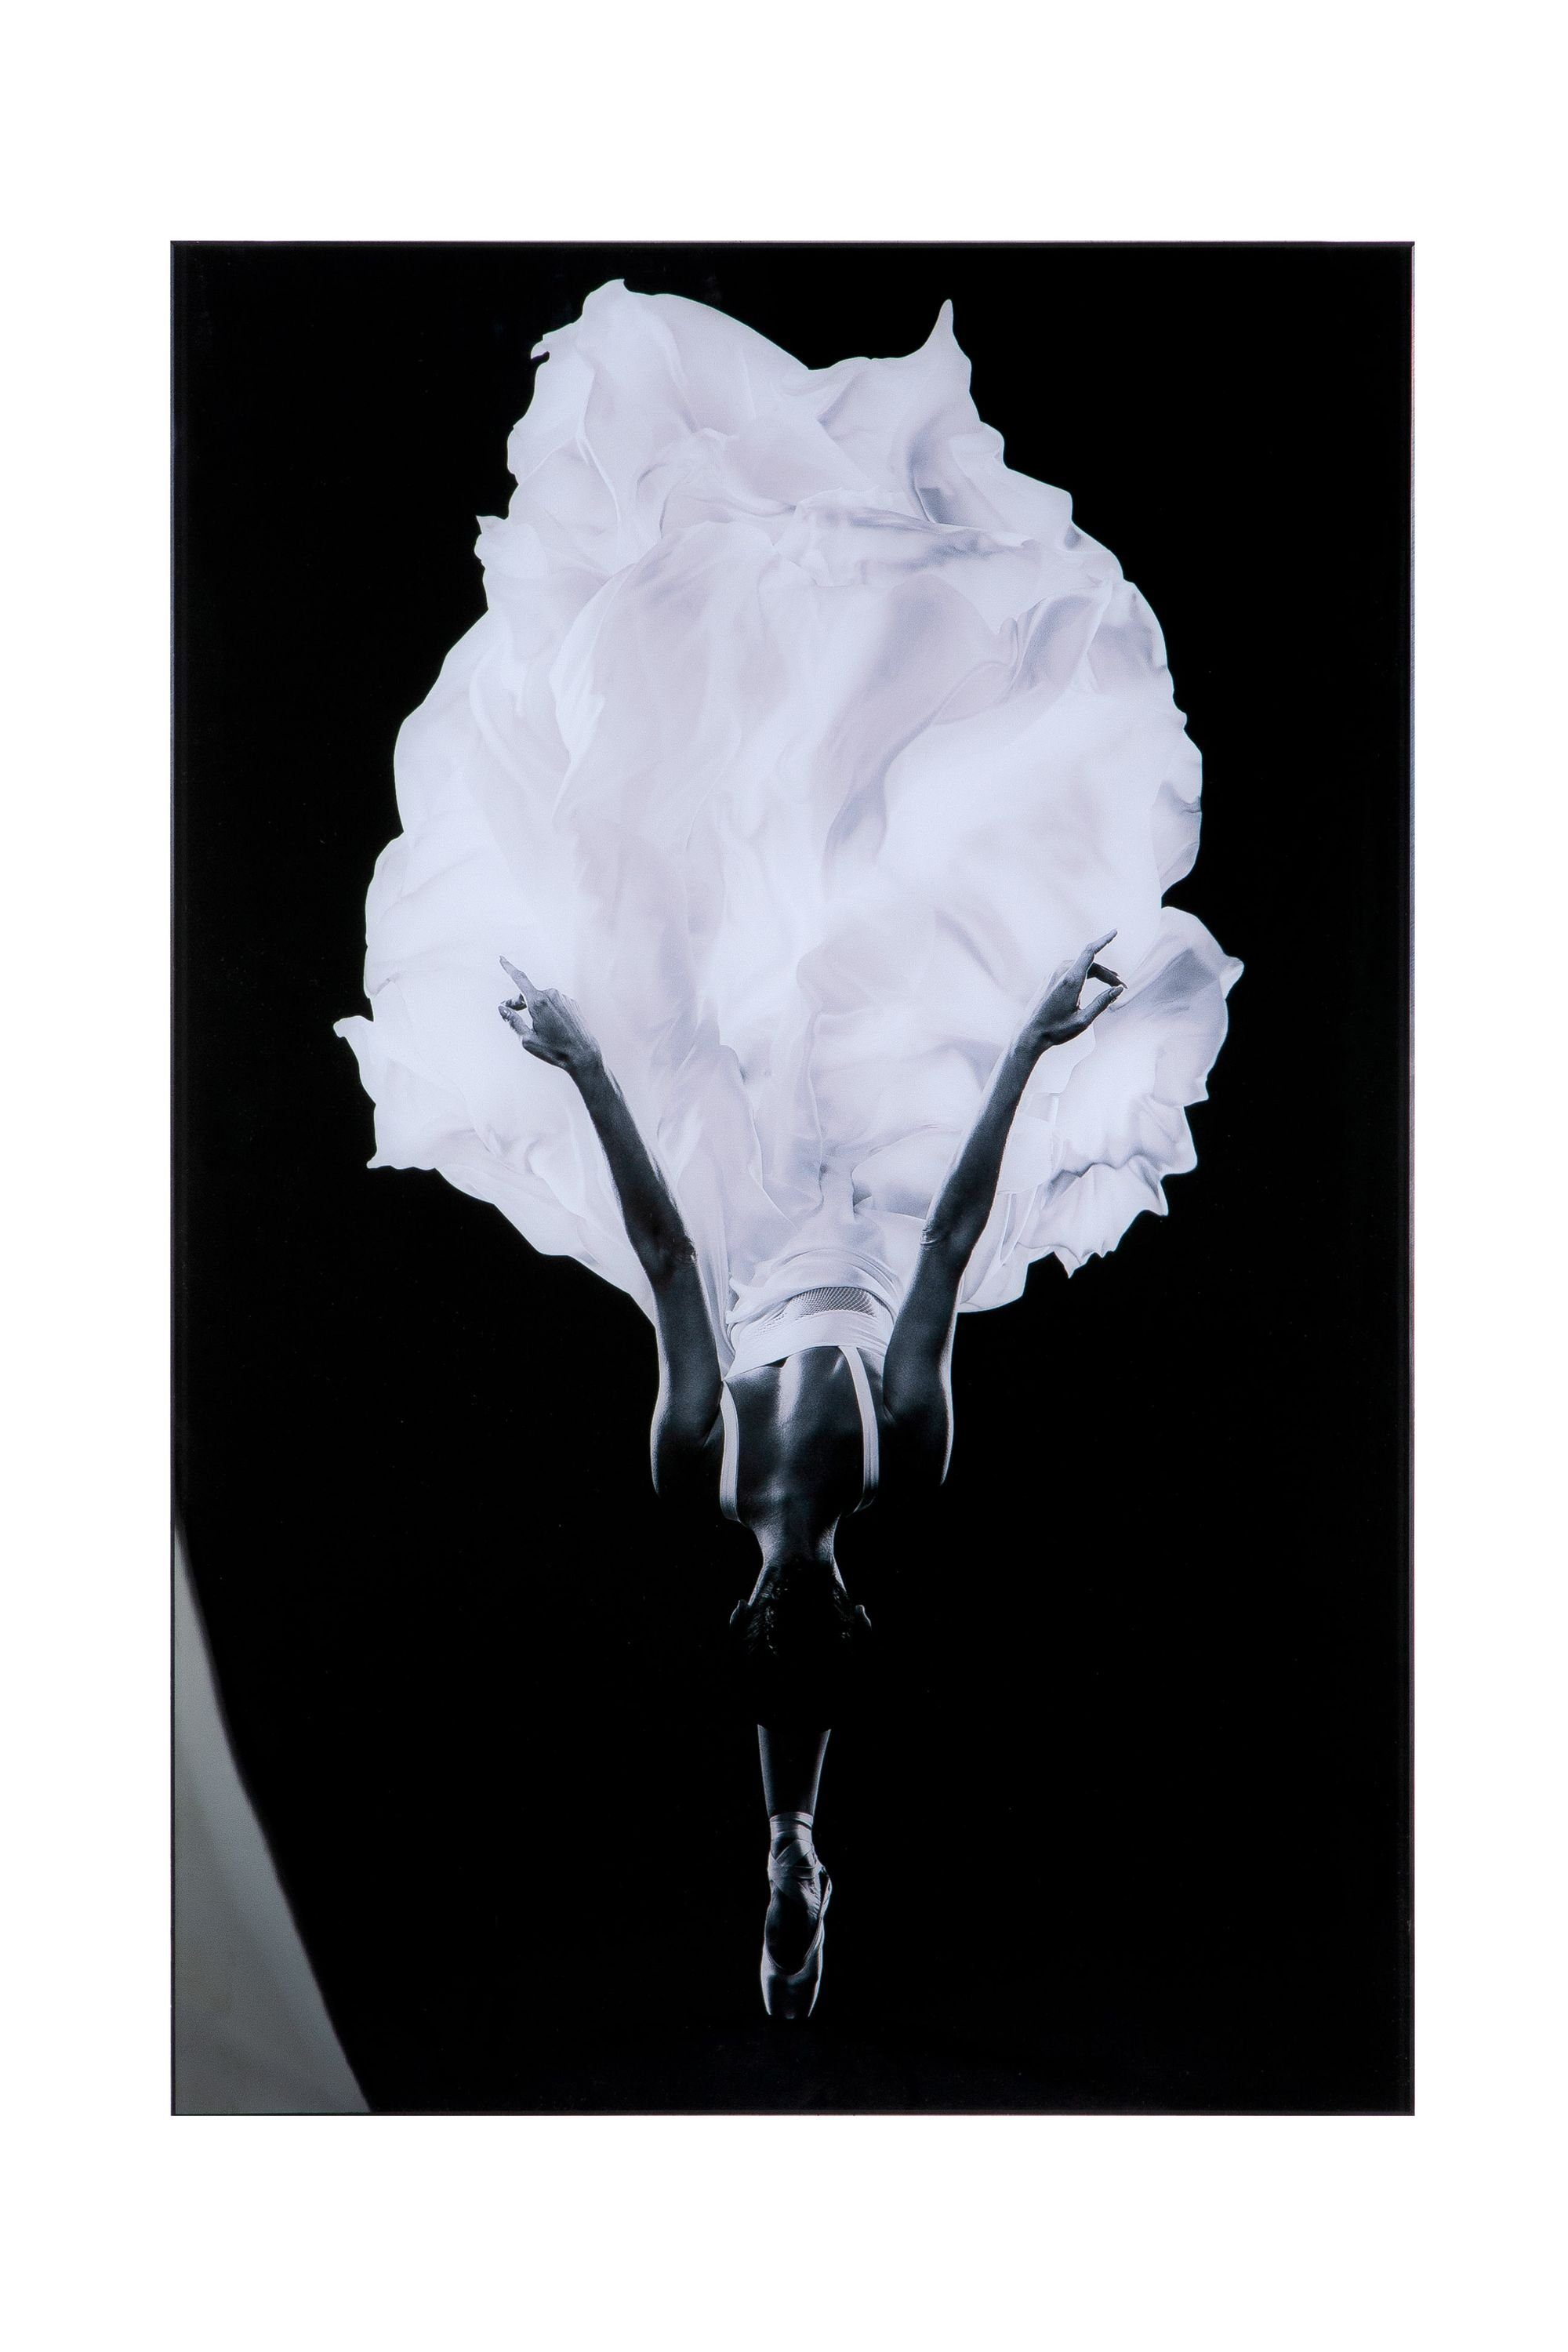 90cm 60cm x GILDE Ballerina GILDE schwarz Bild - Acryl Bild B. - H.